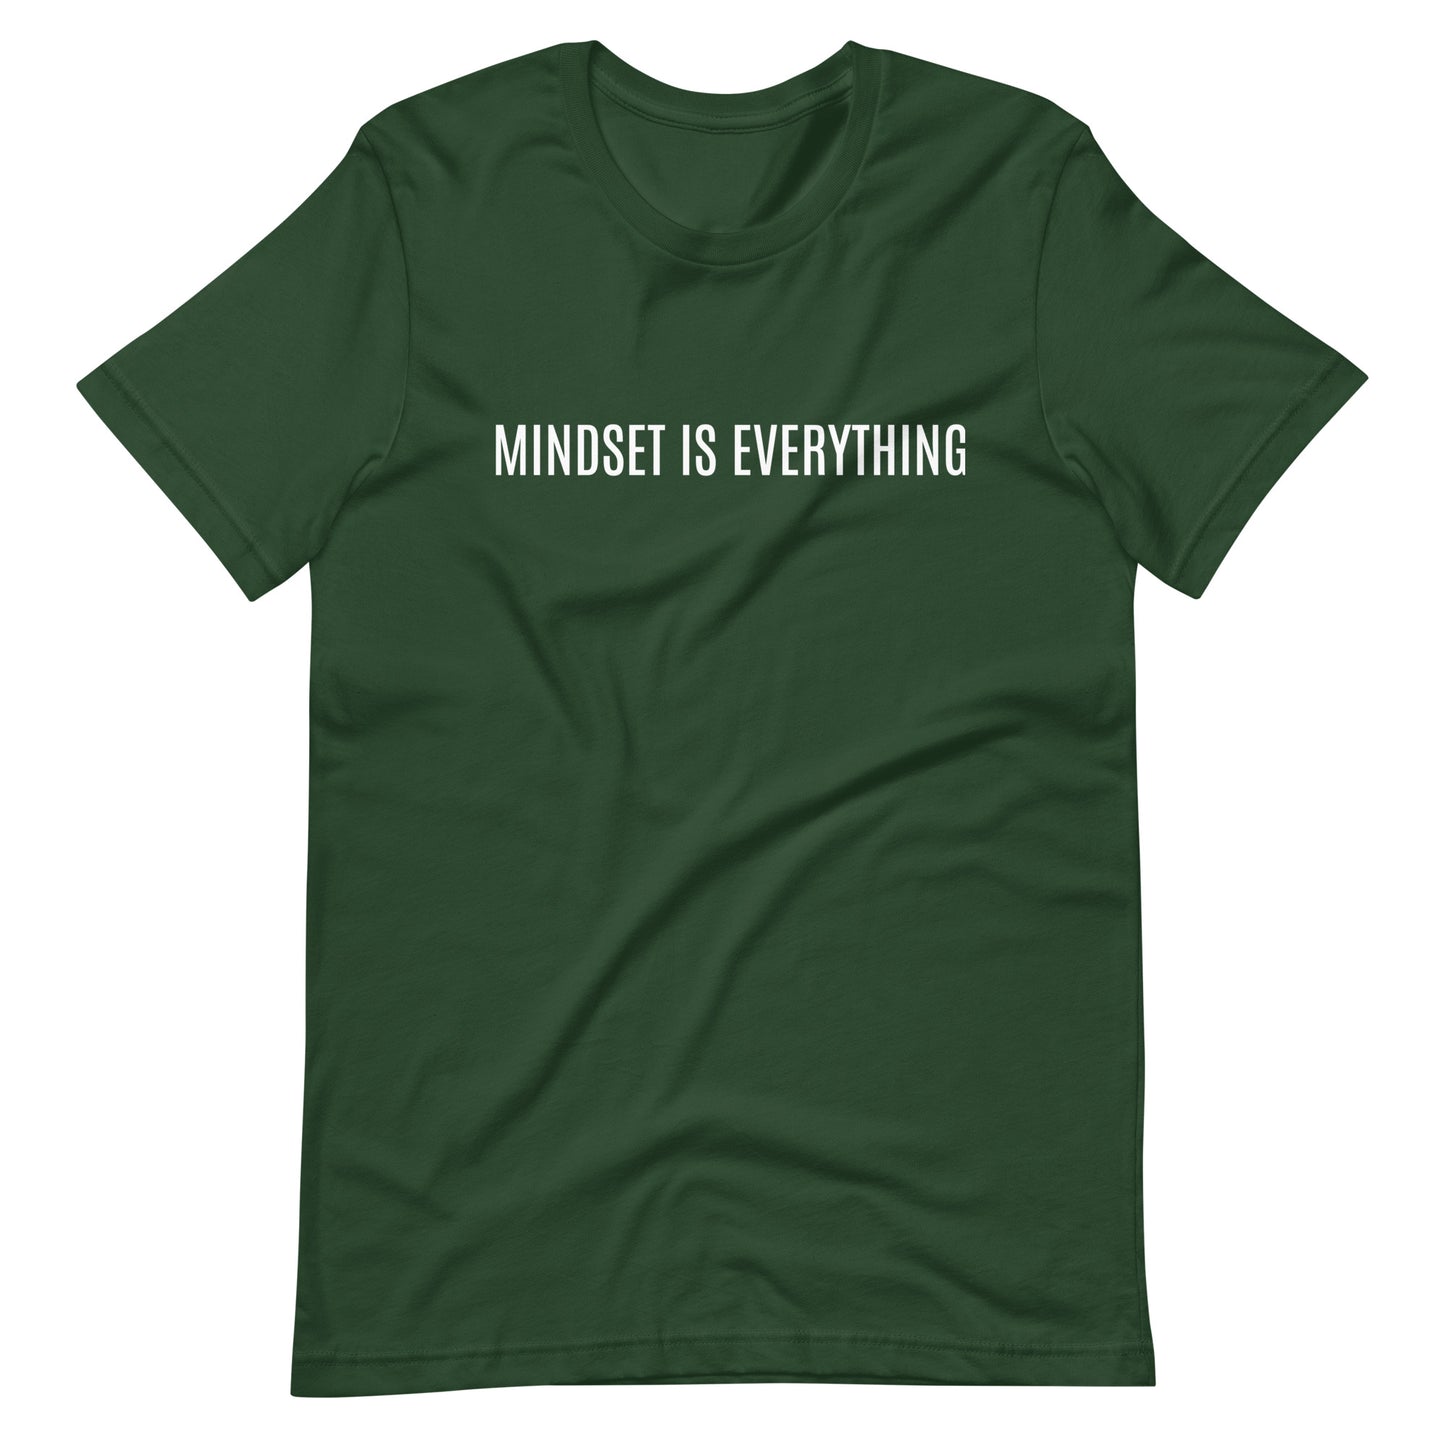 MINDSET IS EVERYTHING - Unisex t-shirt